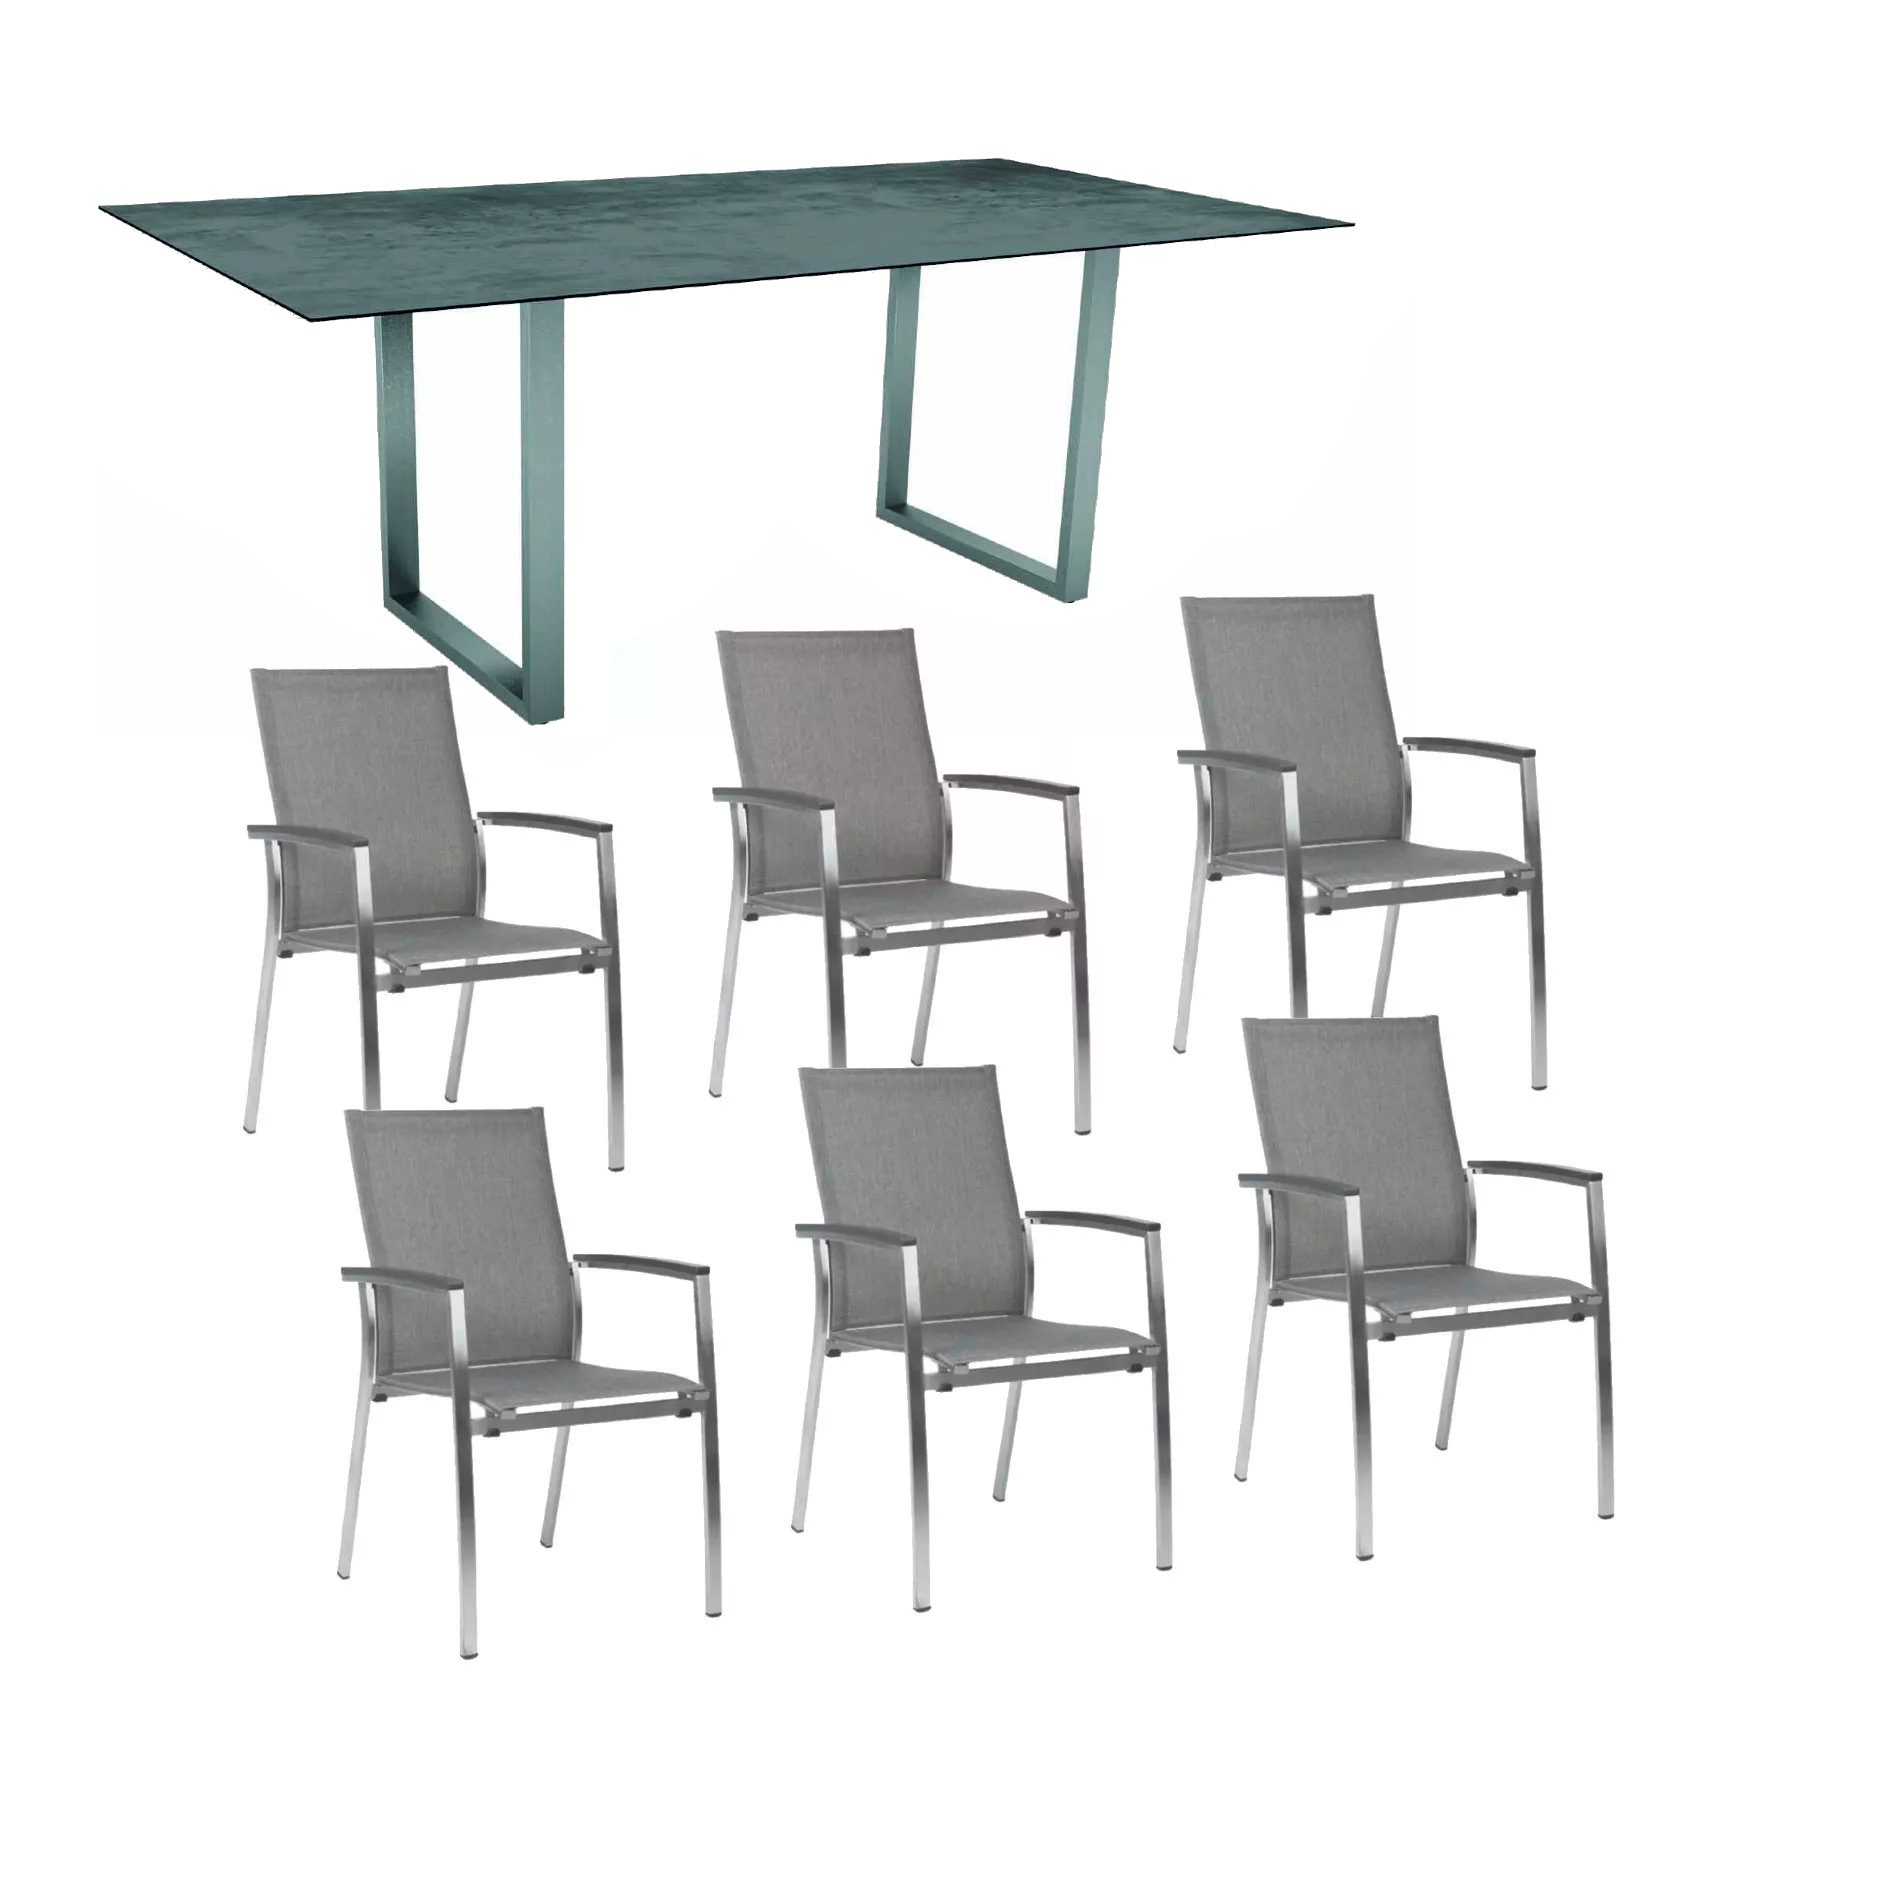 Stern Gartenmöbel-Set mit Stapelsessel "Mika" und Kufentisch 200x100 cm, Gestelle Edelstahl, Tischplatte HPL Zement